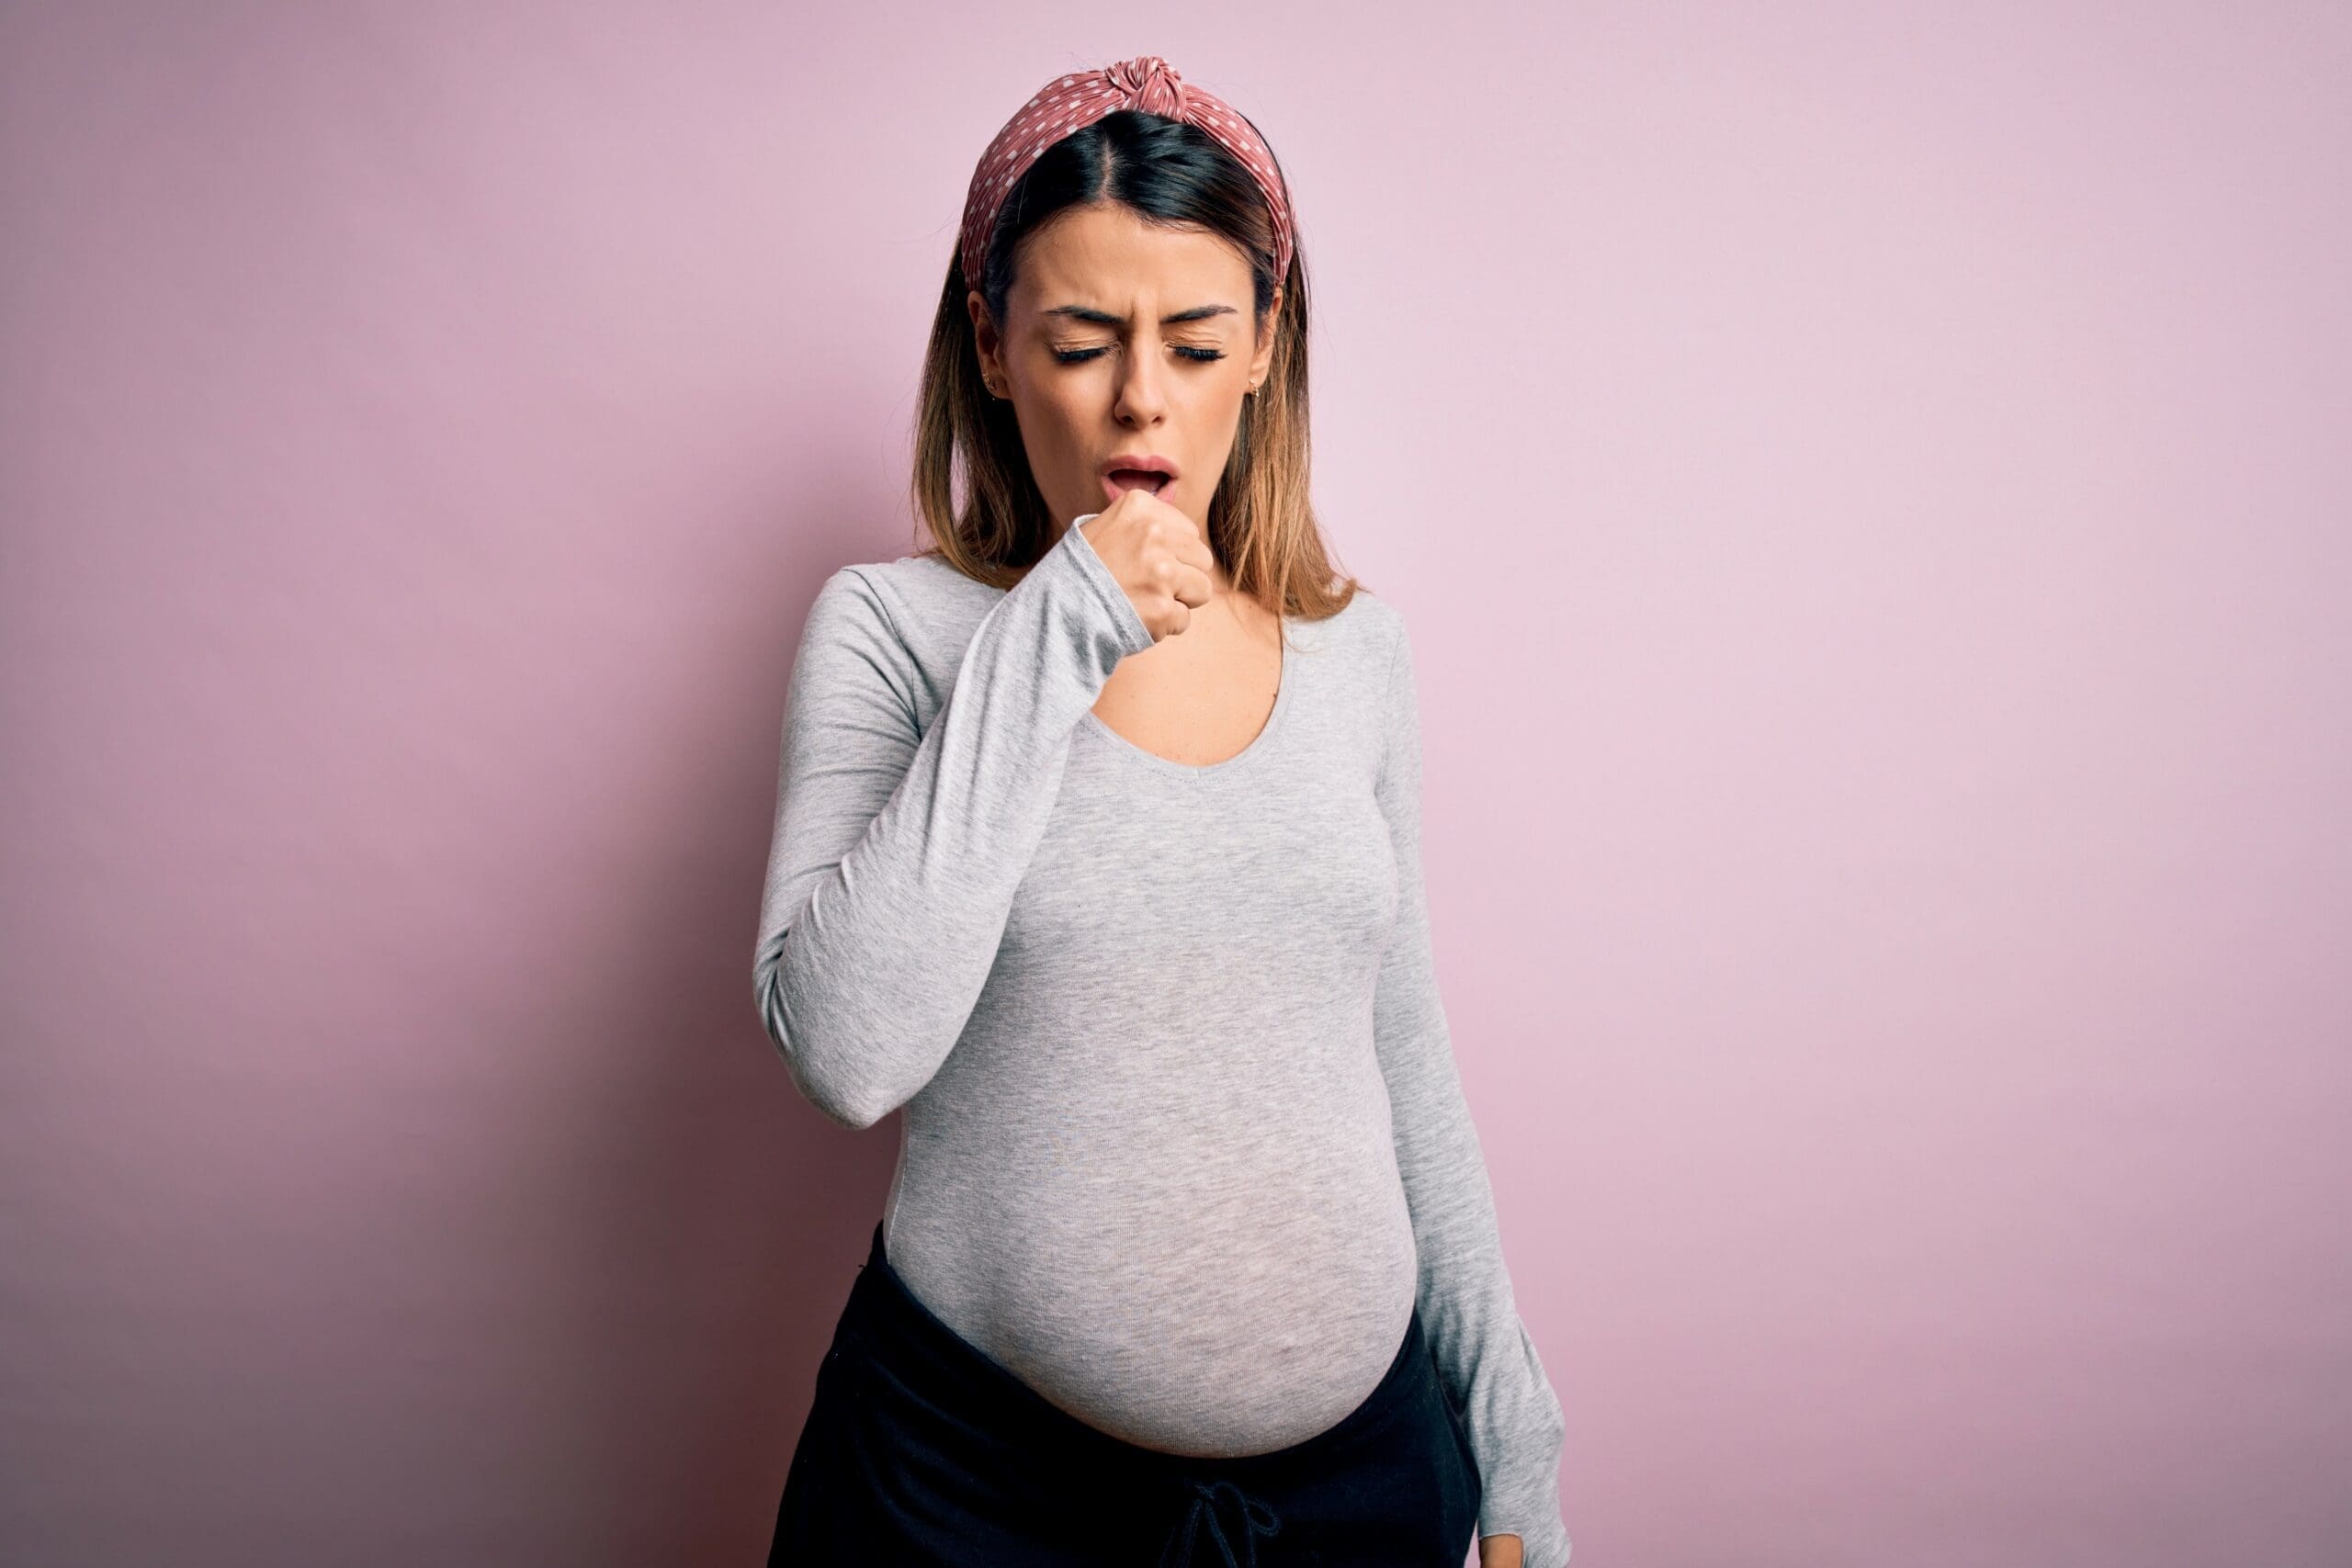 Asthma, pregnancy and breastfeeding